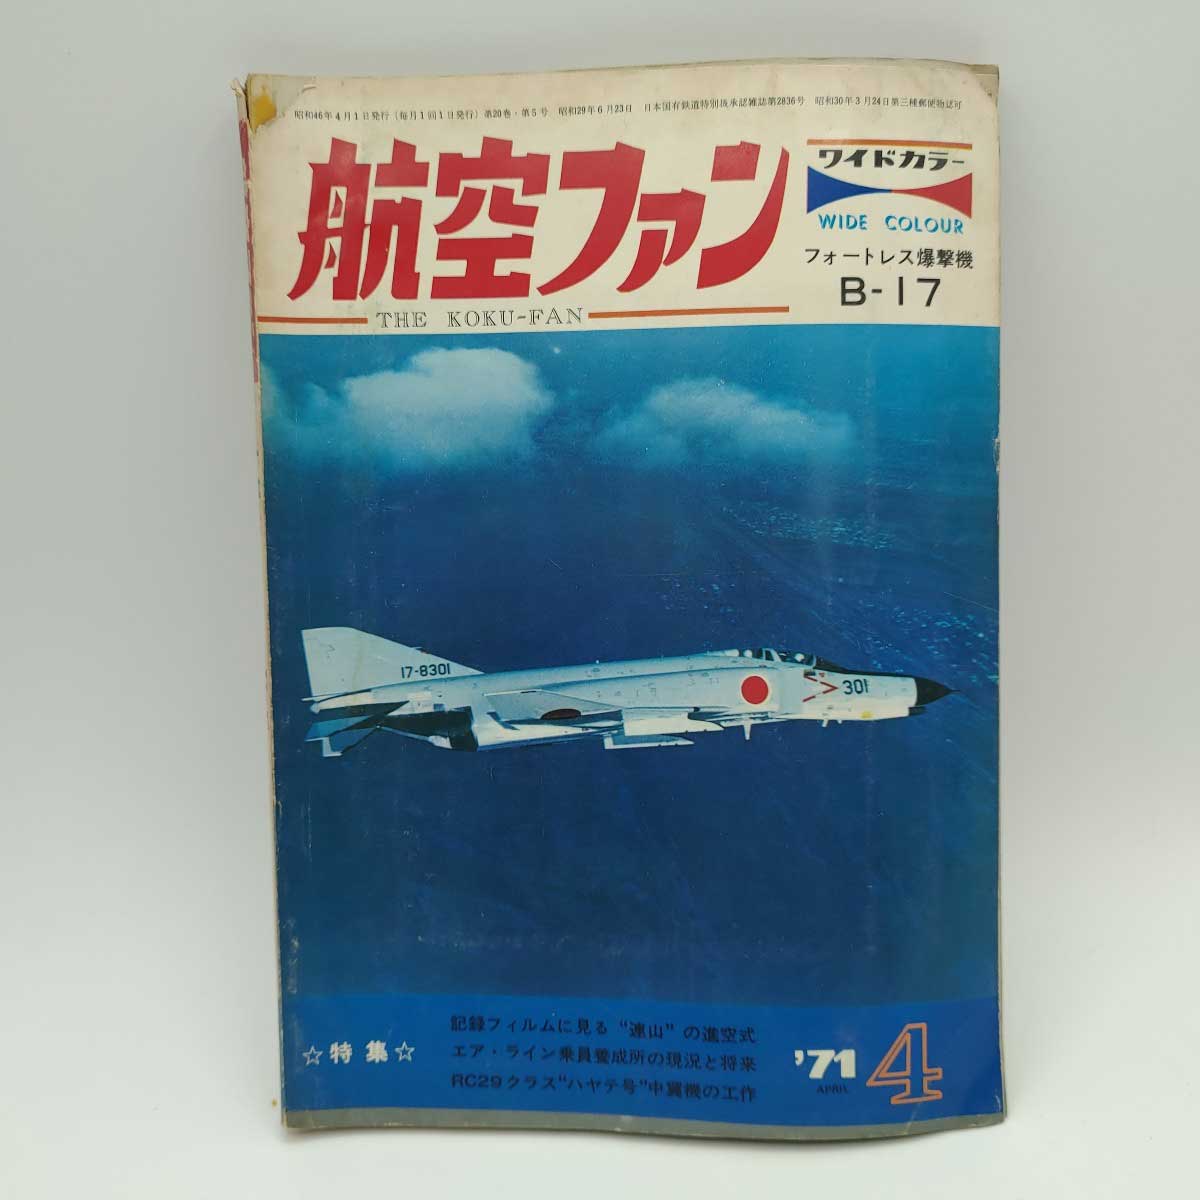 【中古】航空ファン 20巻5号 1971.4 B-17 連山 エアライン乗員養成所の現況と将来 ハヤテ号